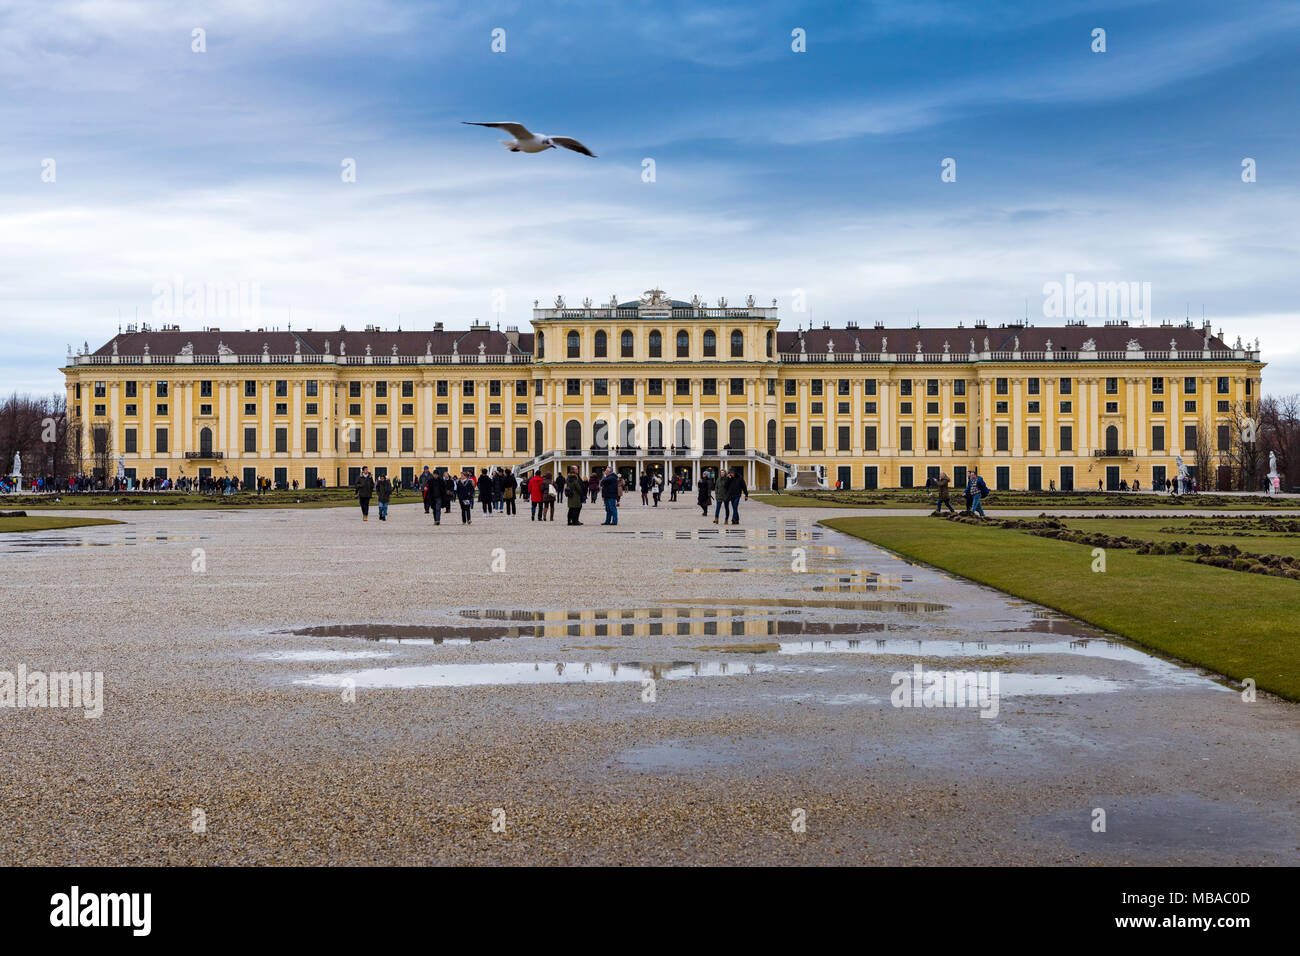 Il parco giardino di Palazzo Shonbrunn (Wien) nella giornata piovosa con piccole pozze e ai grandi gruppi di turisti a piedi attorno a Foto Stock